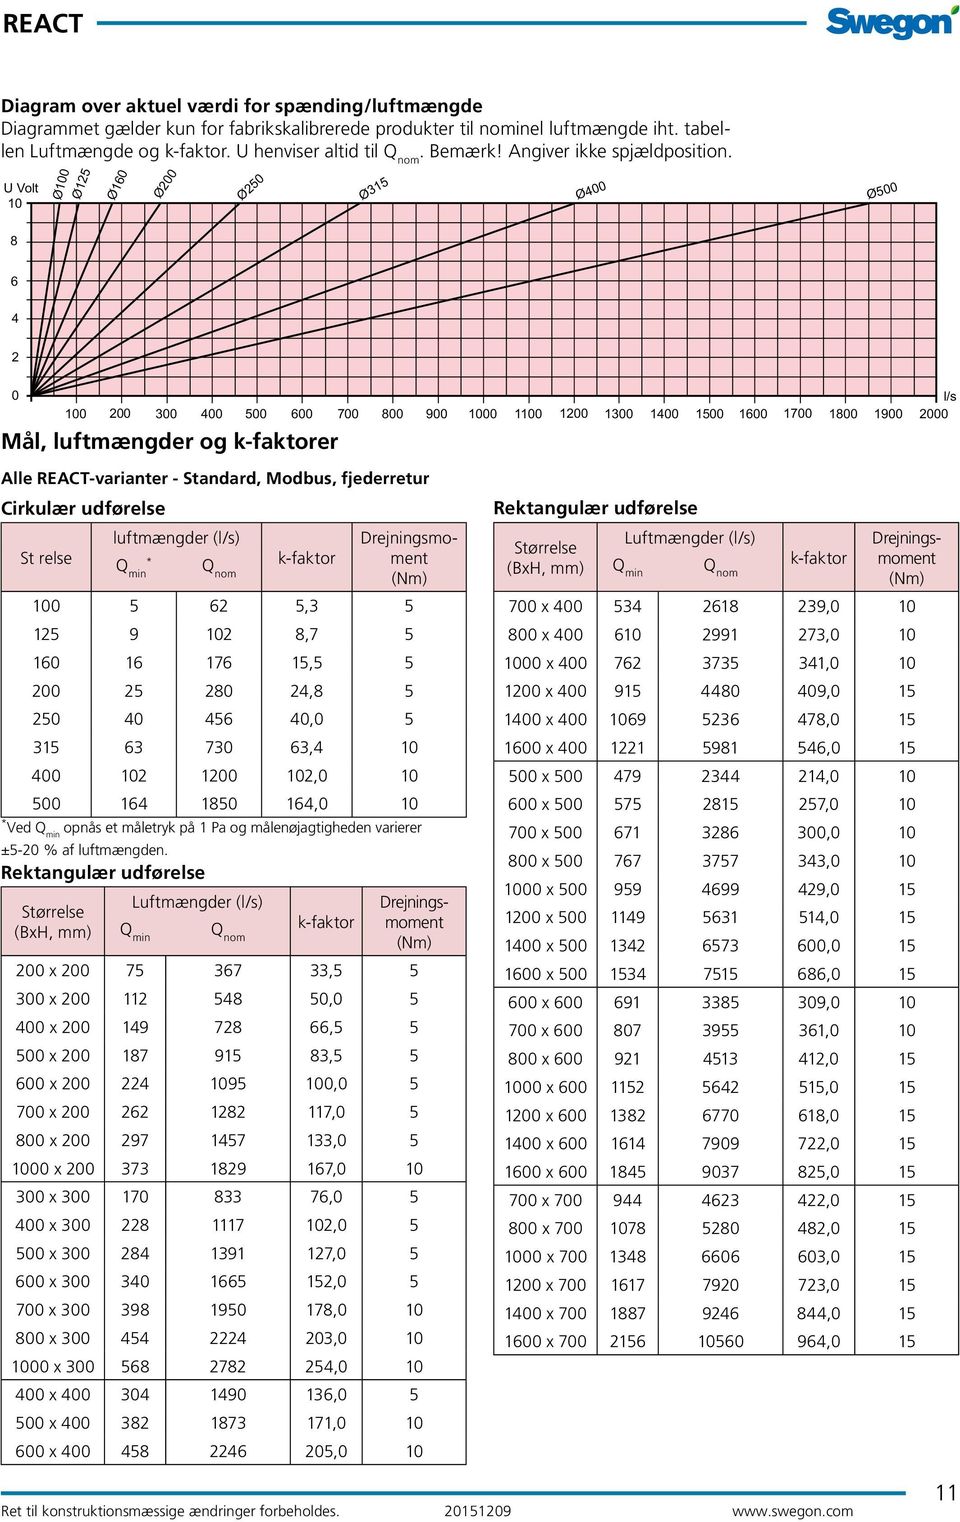 Rektangulær udførelse Størrelse (BxH, mm) 200 300 Luftmængder (l/s) Q min 400 500 Q nom 600 700 Mål, luftmængder og k-faktorer lle -varianter - Standard, Modbus, fjederretur Cirkulær udførelse